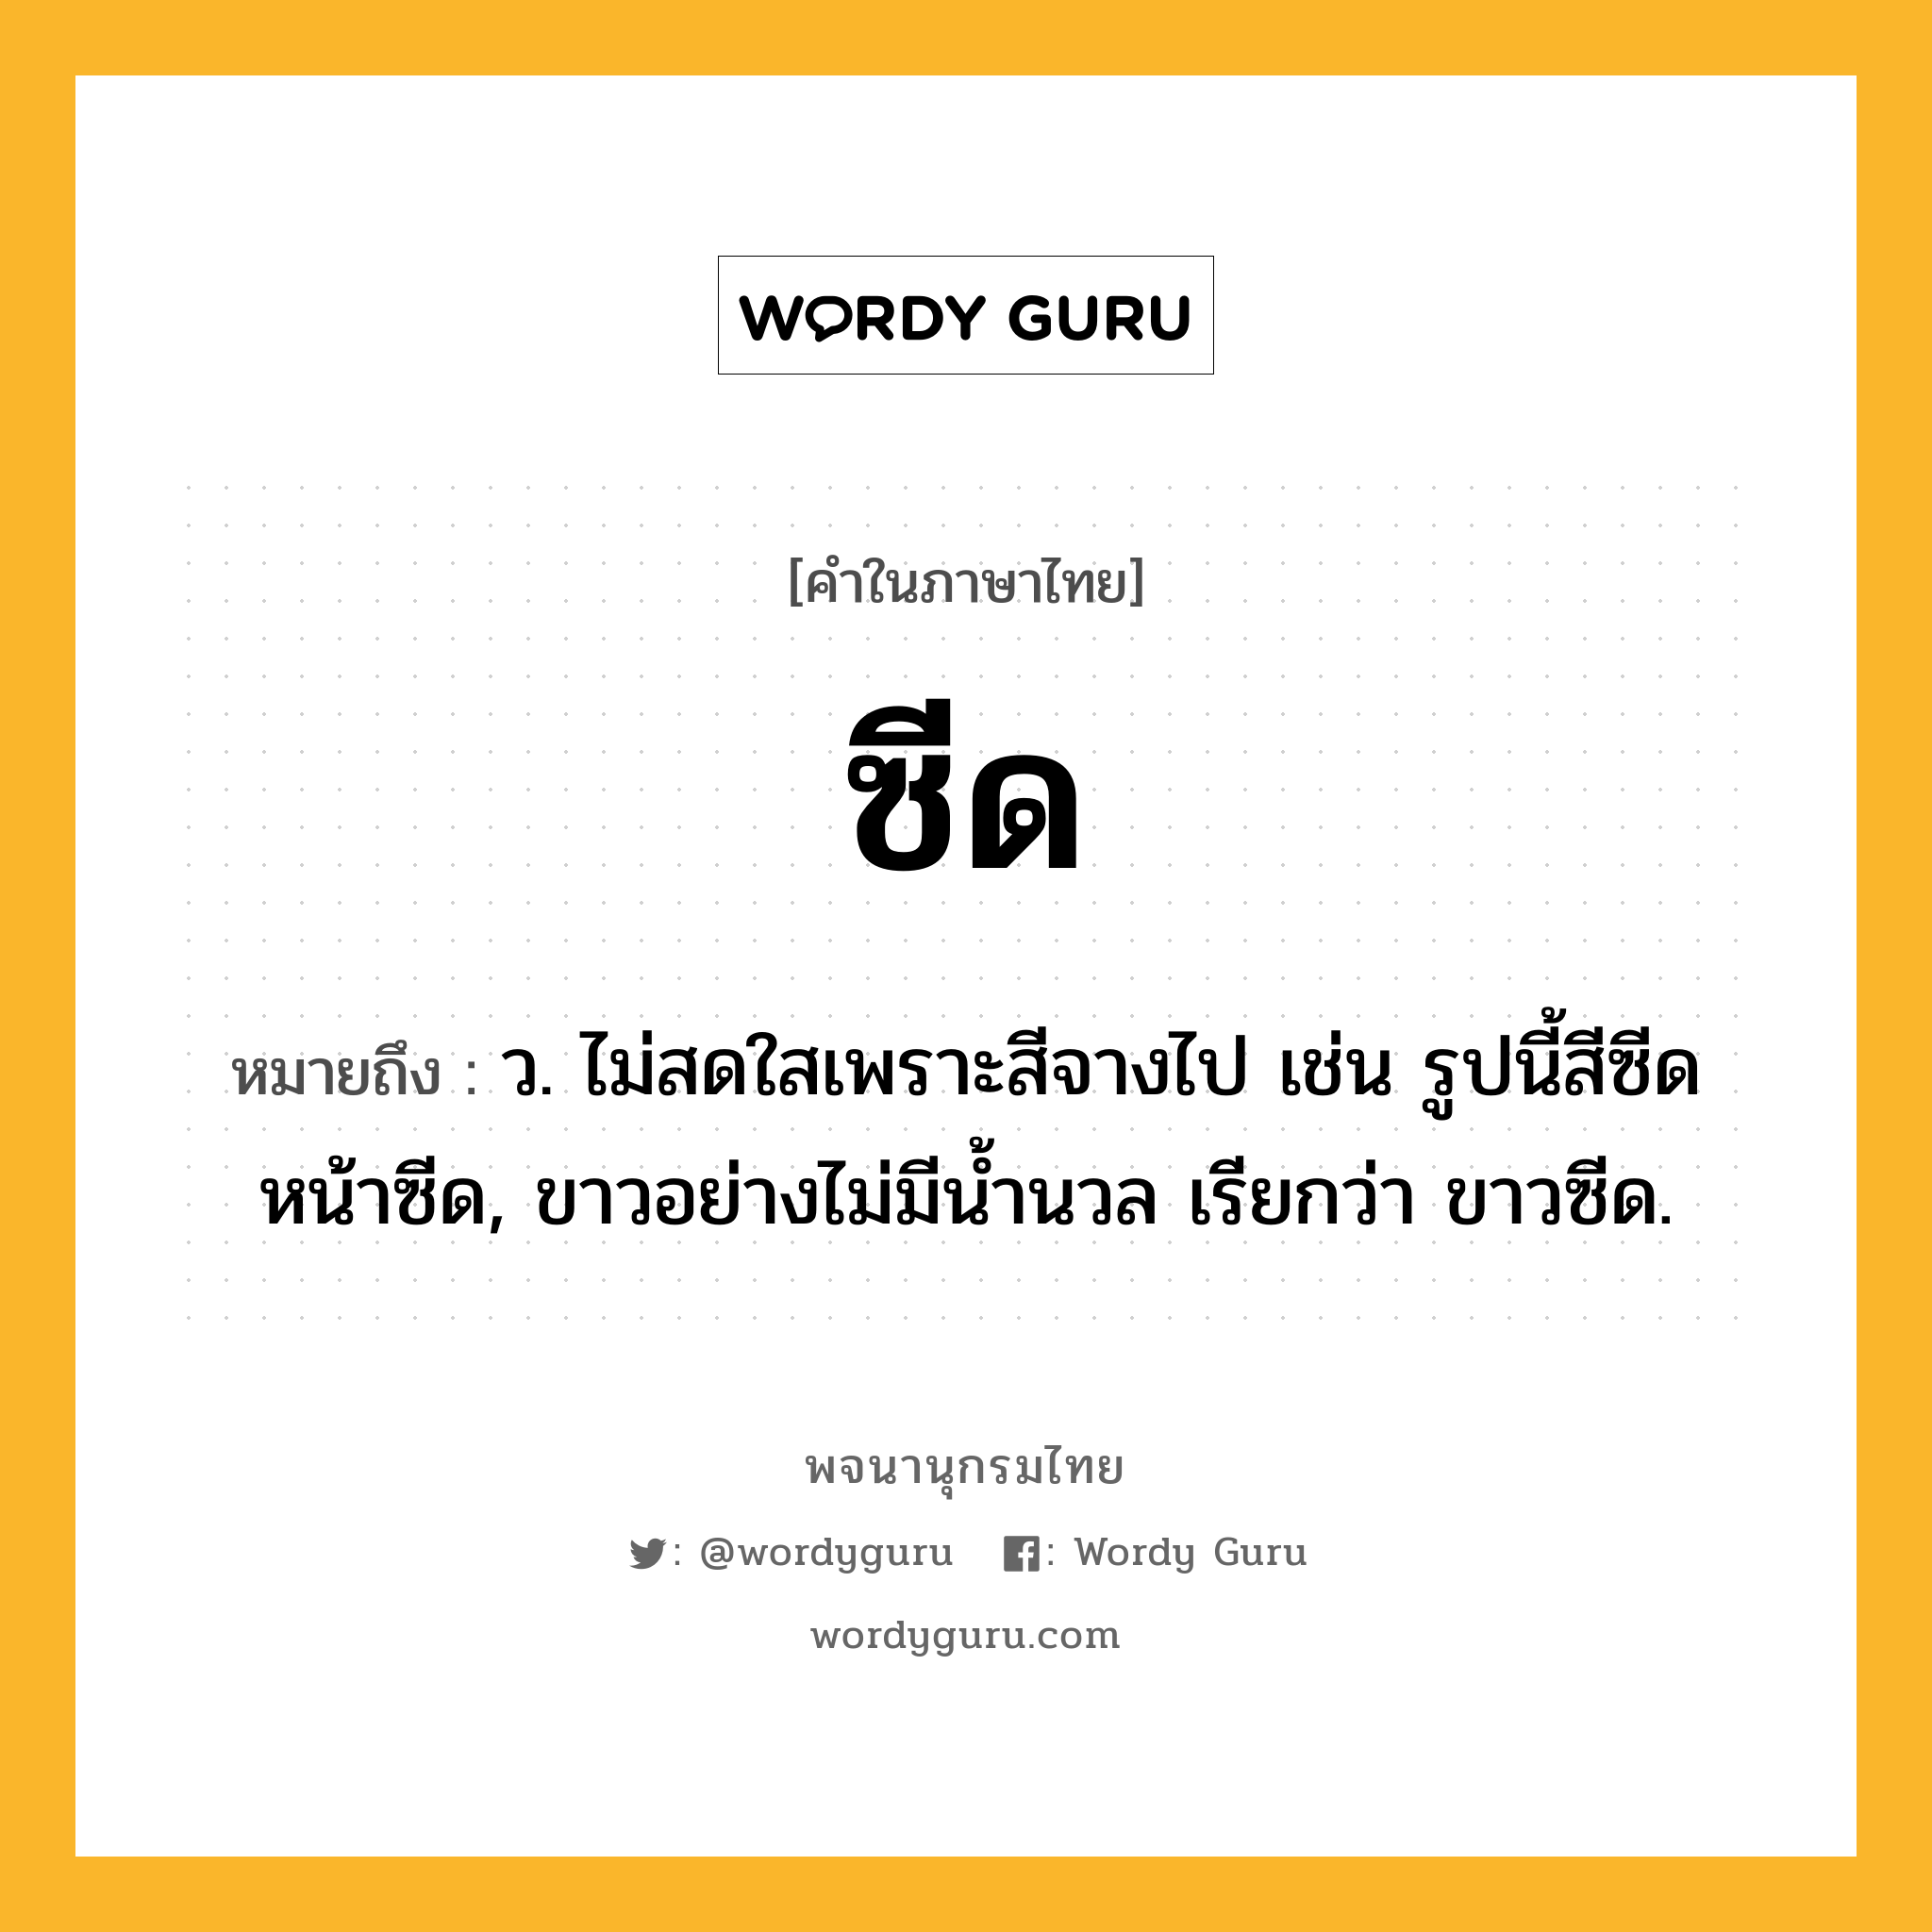 ซีด ความหมาย หมายถึงอะไร?, คำในภาษาไทย ซีด หมายถึง ว. ไม่สดใสเพราะสีจางไป เช่น รูปนี้สีซีด หน้าซีด, ขาวอย่างไม่มีนํ้านวล เรียกว่า ขาวซีด.